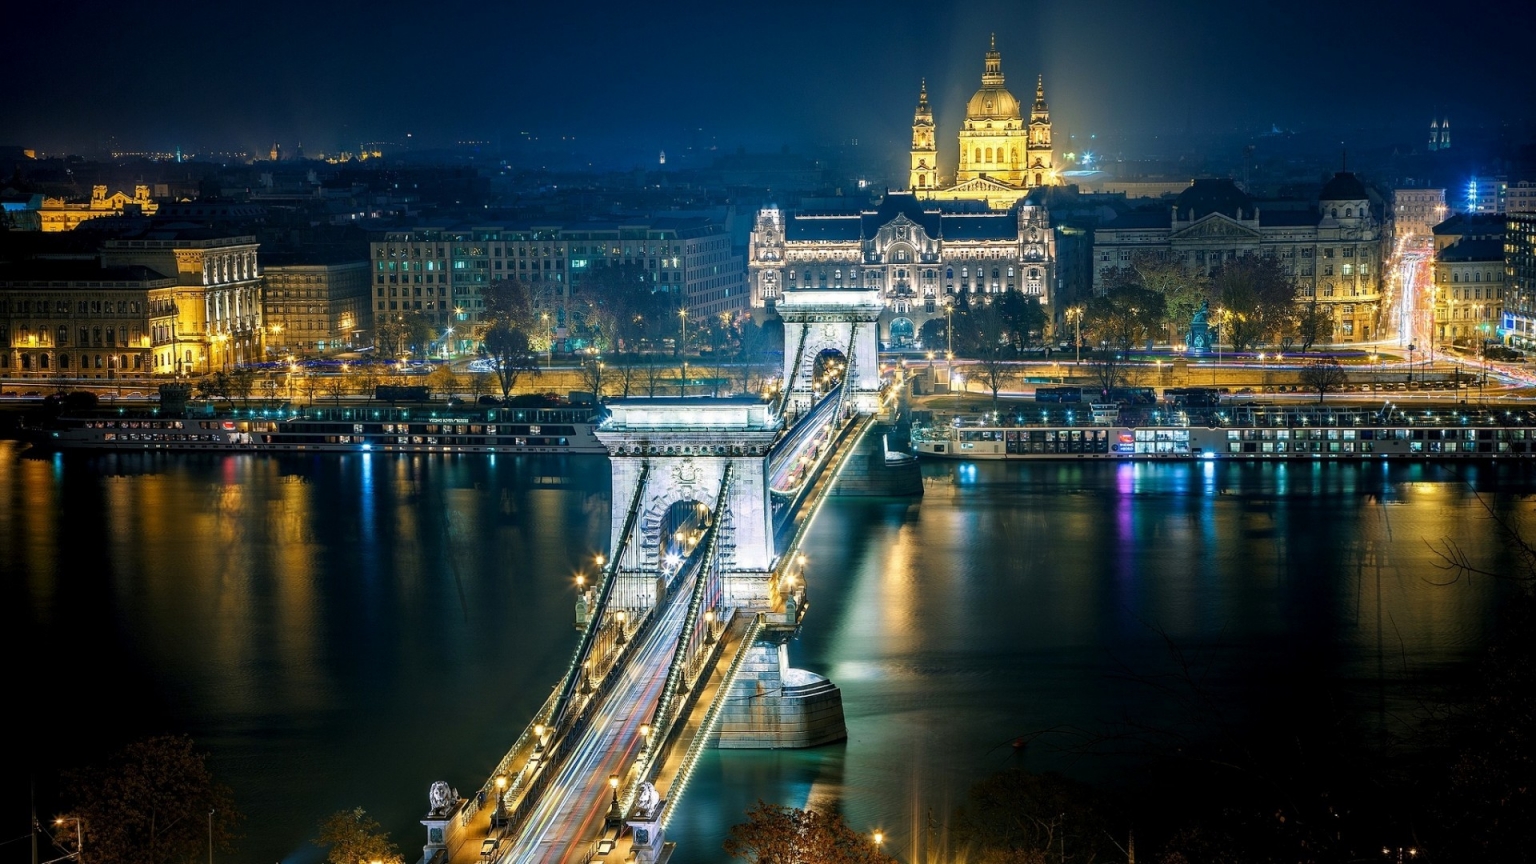 Szechenyi Chain Bridge Budapest for 1536 x 864 HDTV resolution